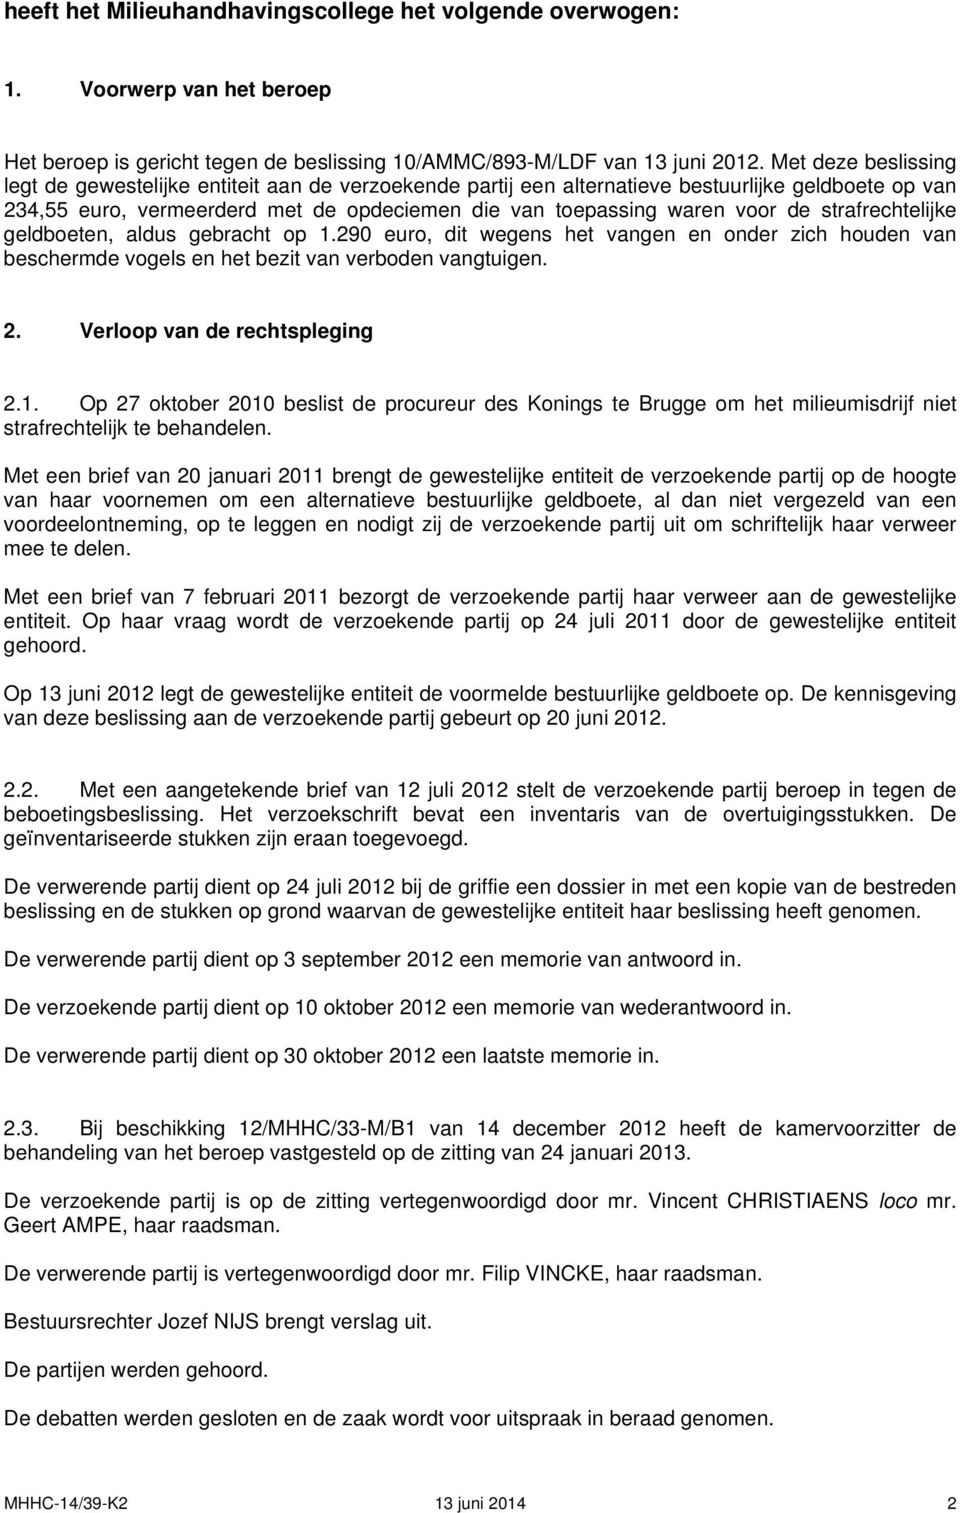 strafrechtelijke geldboeten, aldus gebracht op 1.290 euro, dit wegens het vangen en onder zich houden van beschermde vogels en het bezit van verboden vangtuigen. 2. Verloop van de rechtspleging 2.1. Op 27 oktober 2010 beslist de procureur des Konings te Brugge om het milieumisdrijf niet strafrechtelijk te behandelen.